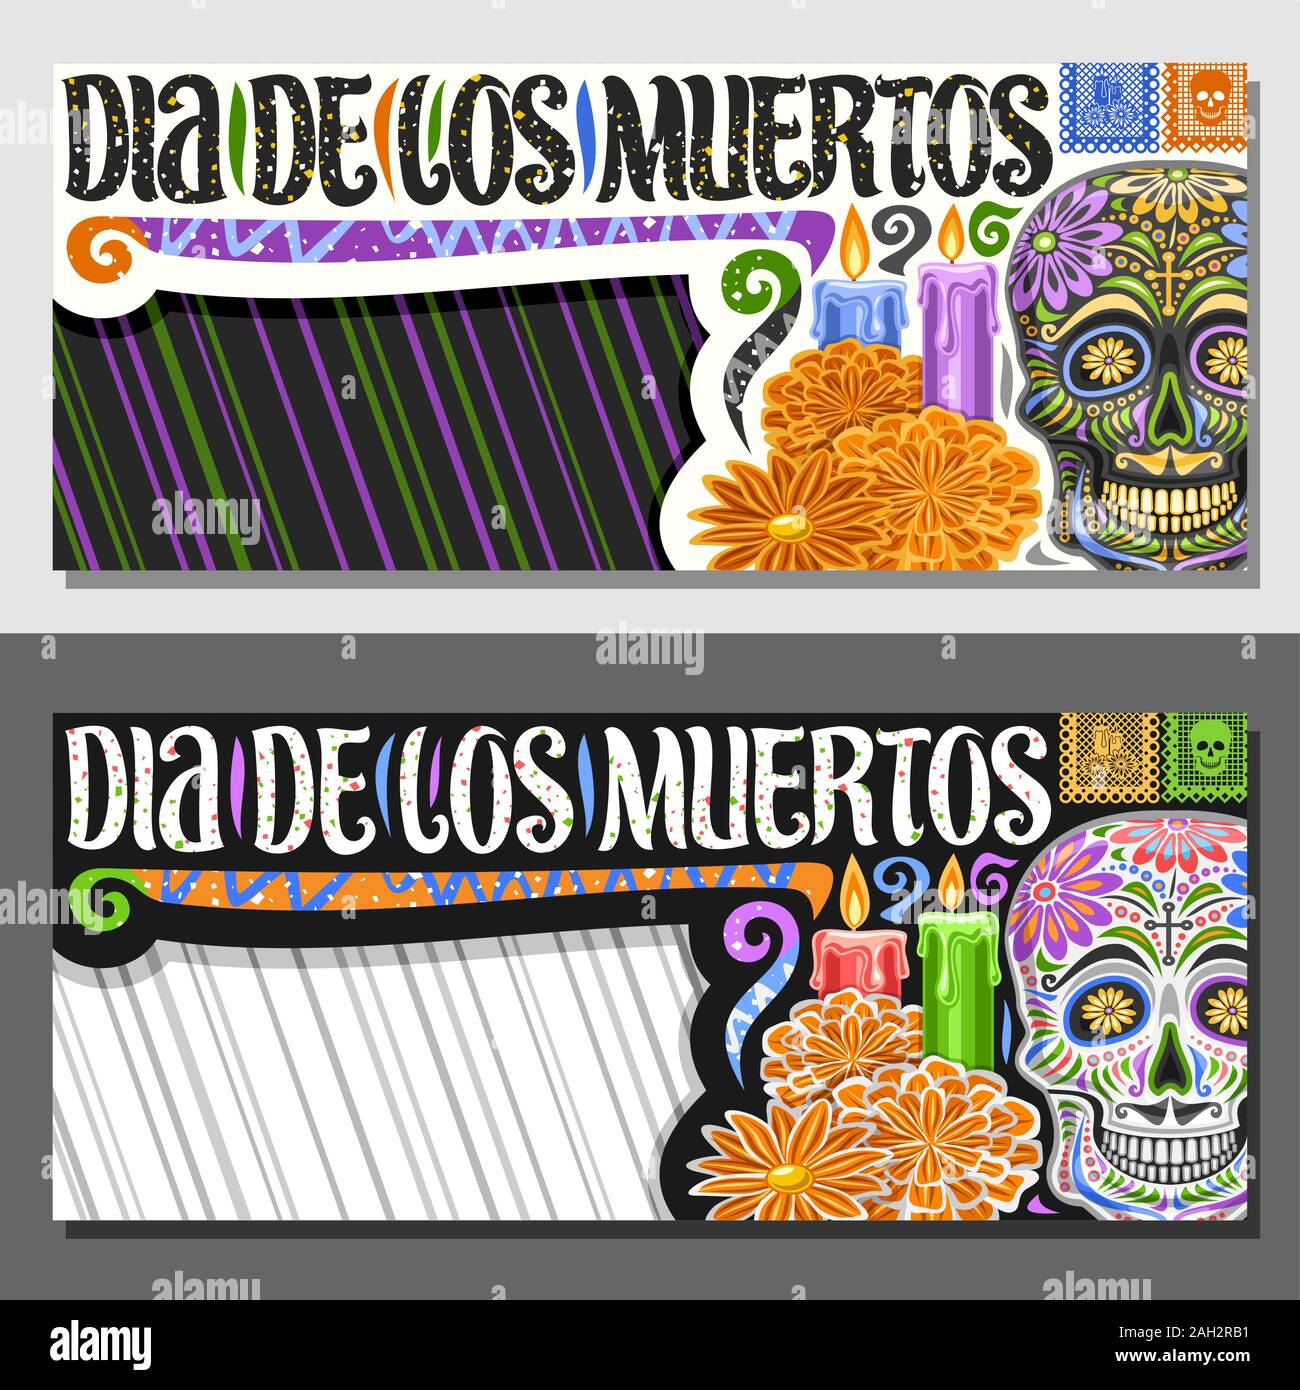 Vektor Layouts für Dia de los Muertos mit Kopie Raum, dekorativen Gutschein mit Abbildung: gruselige Schädel, orange Blumen, horizontale Grußkarte w Stock Vektor